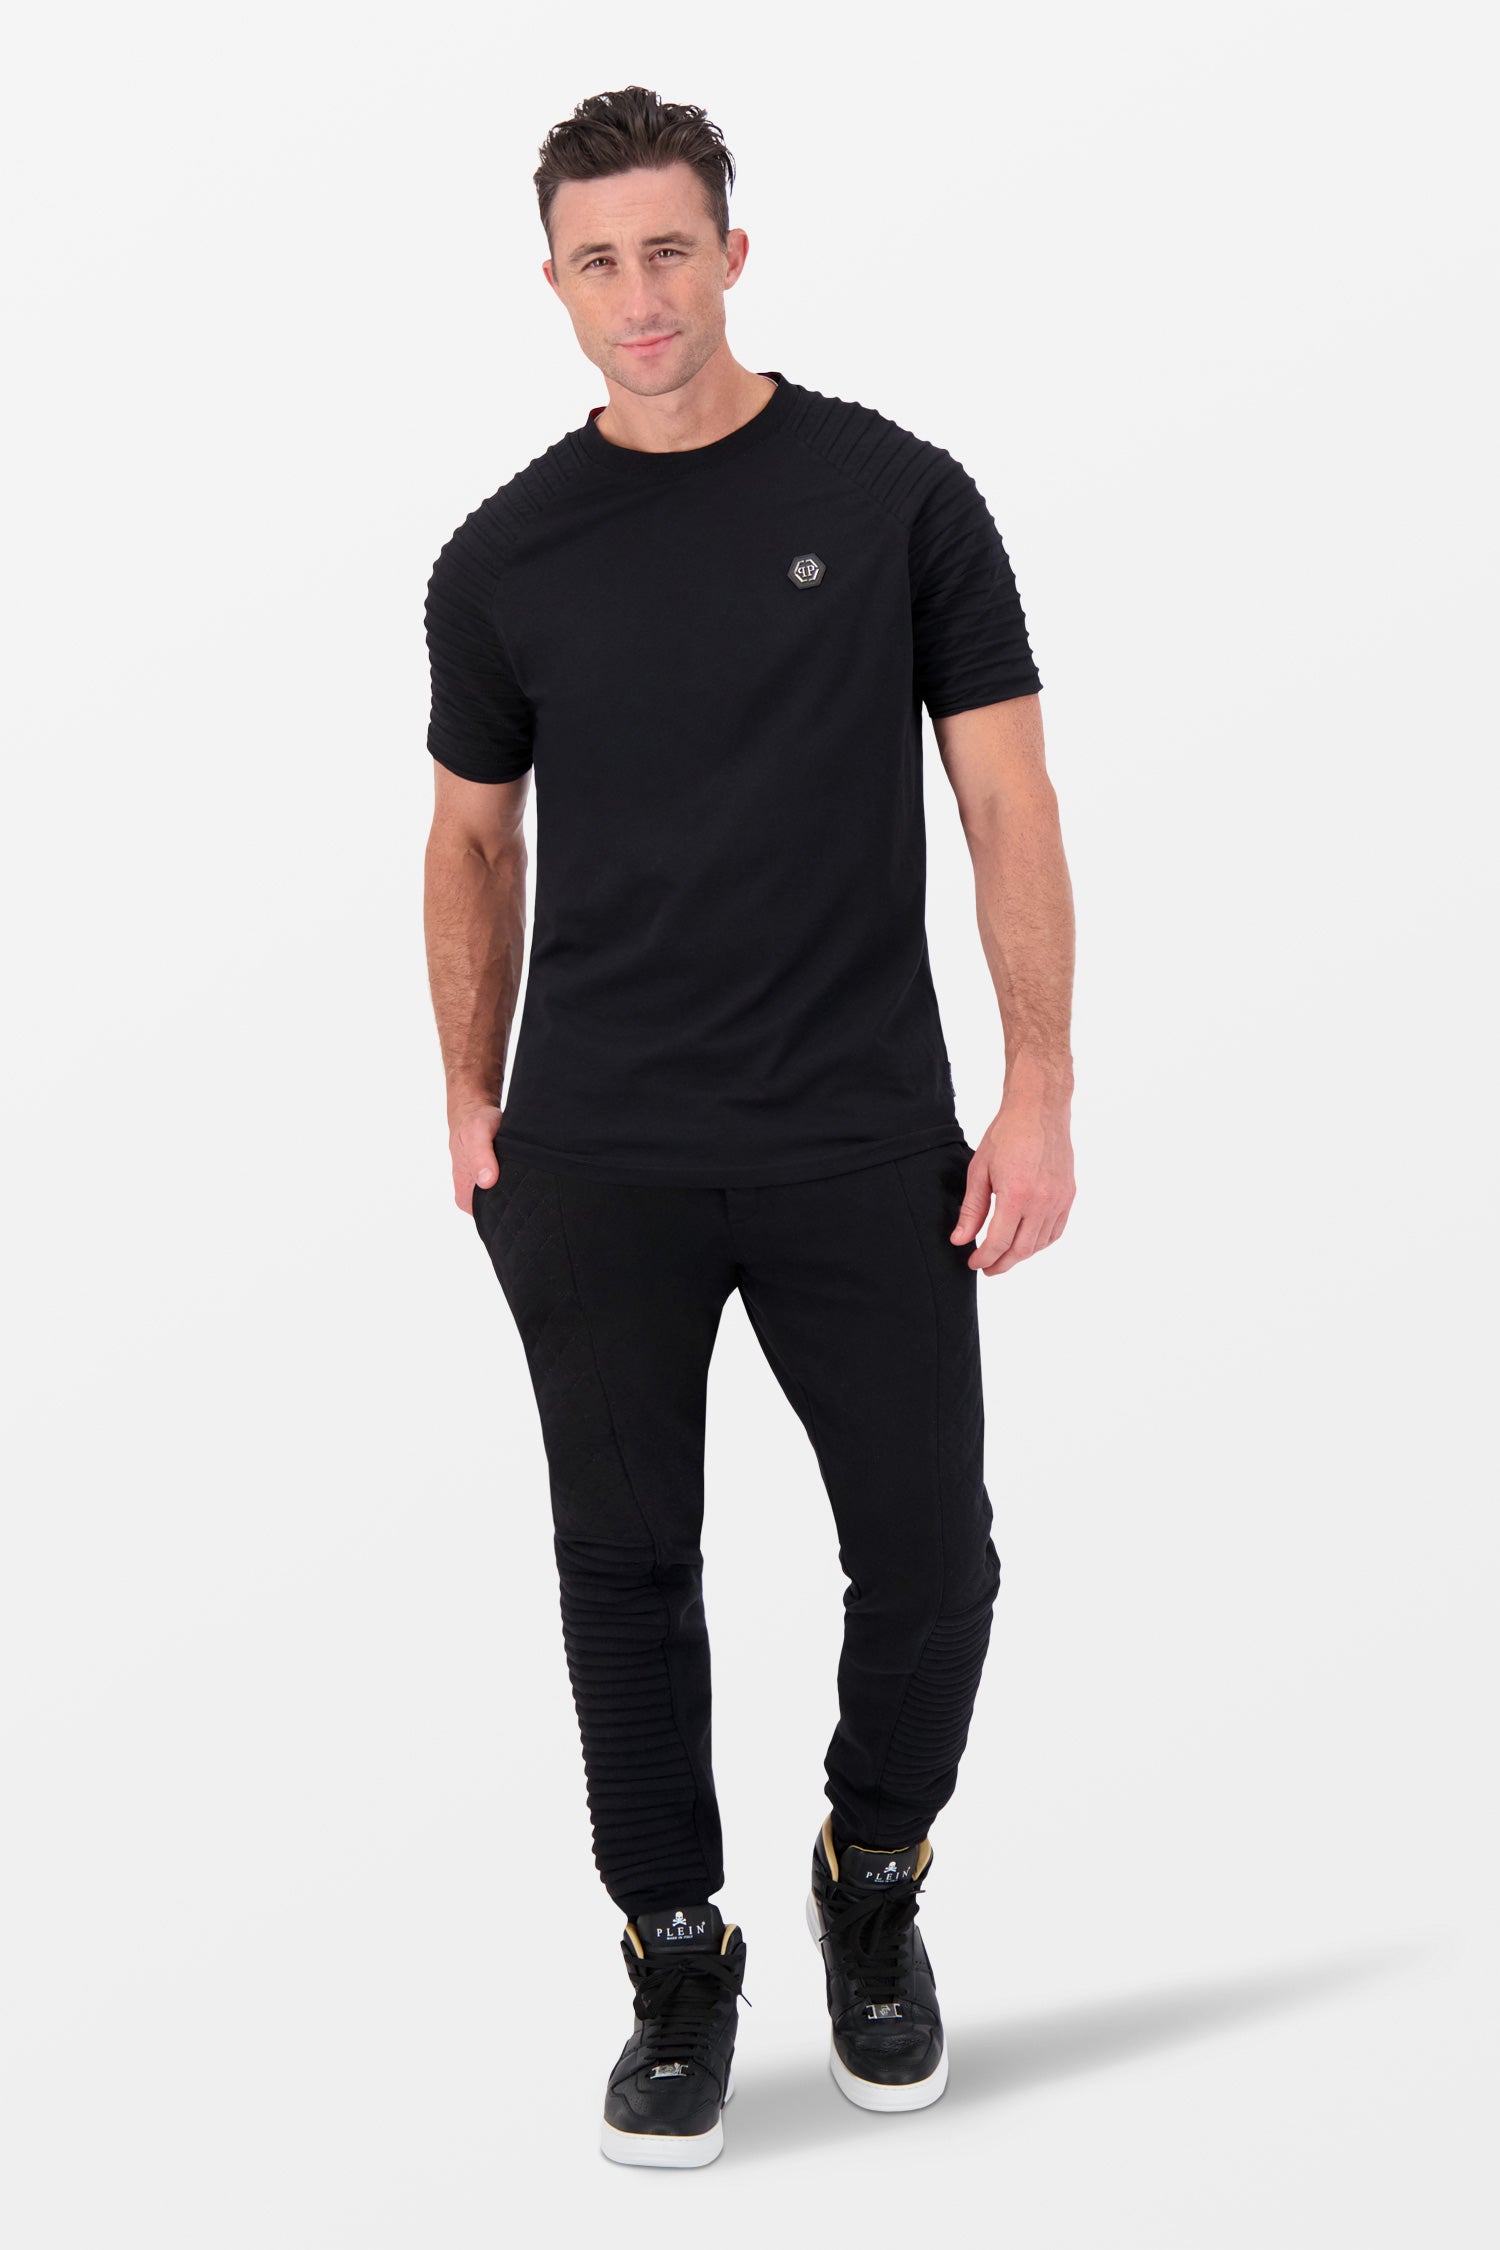 Philipp Plein Black Round Neck T-Shirt